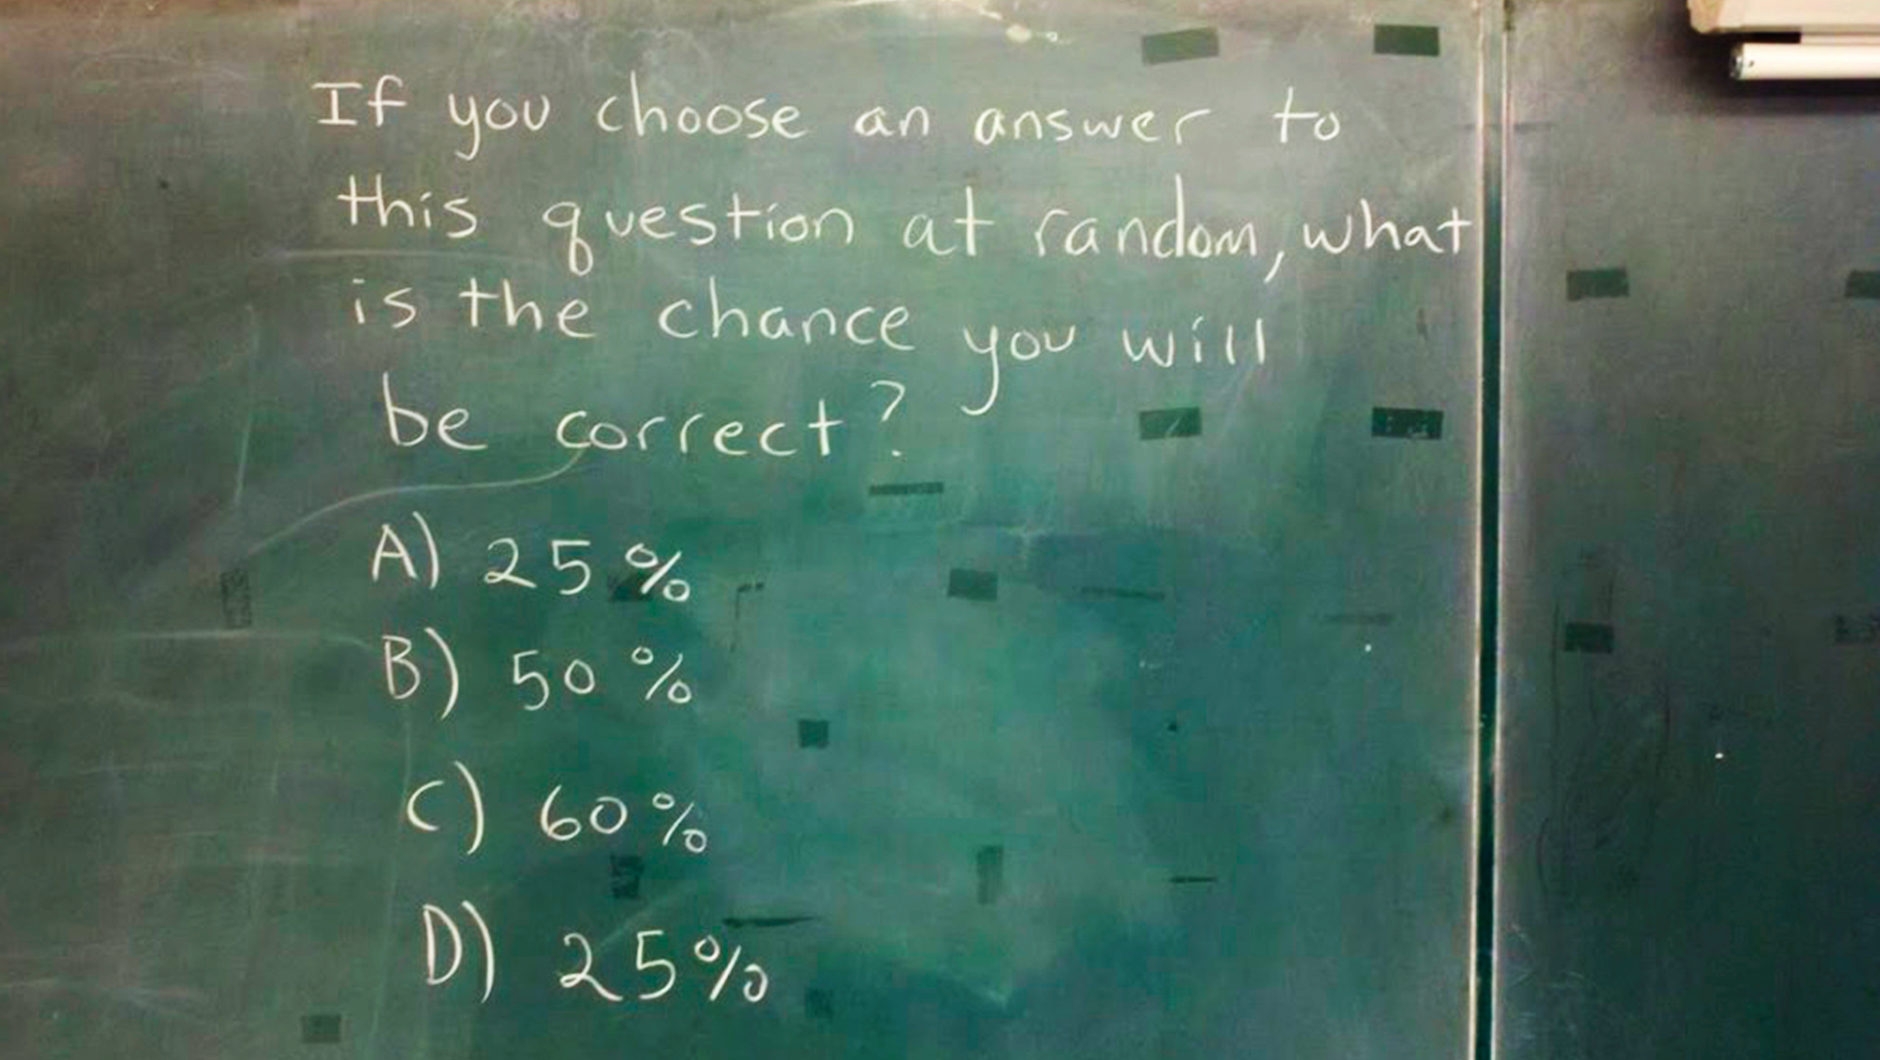 Наглядный пример точности ответов, выбранных с помощью метода тыка. Задача: если выбрать ответ наугад, какова вероятность того, что он будет правильным?